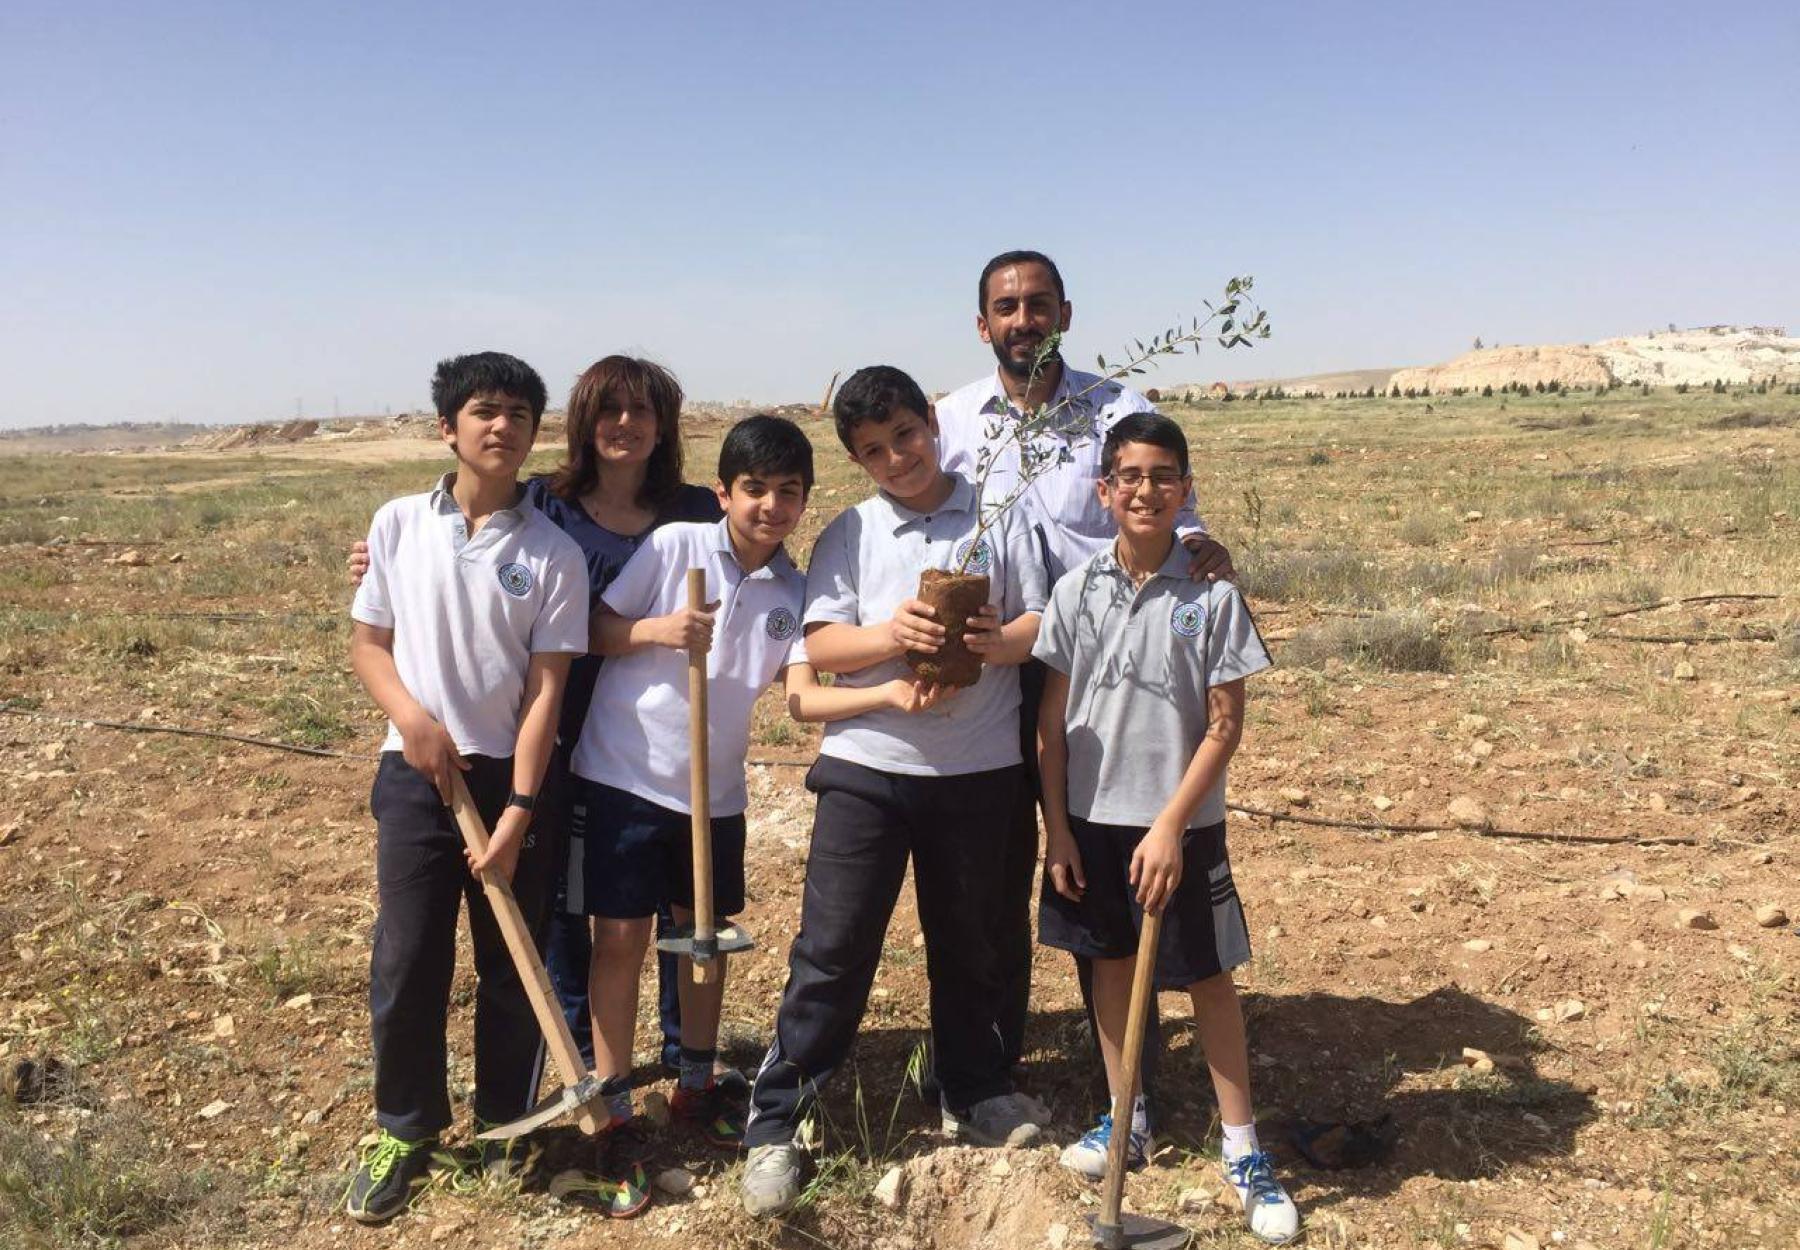 العربية وطلاب المدرسة الأرثودوكسية يزرعان الزيتون في وادي القطار